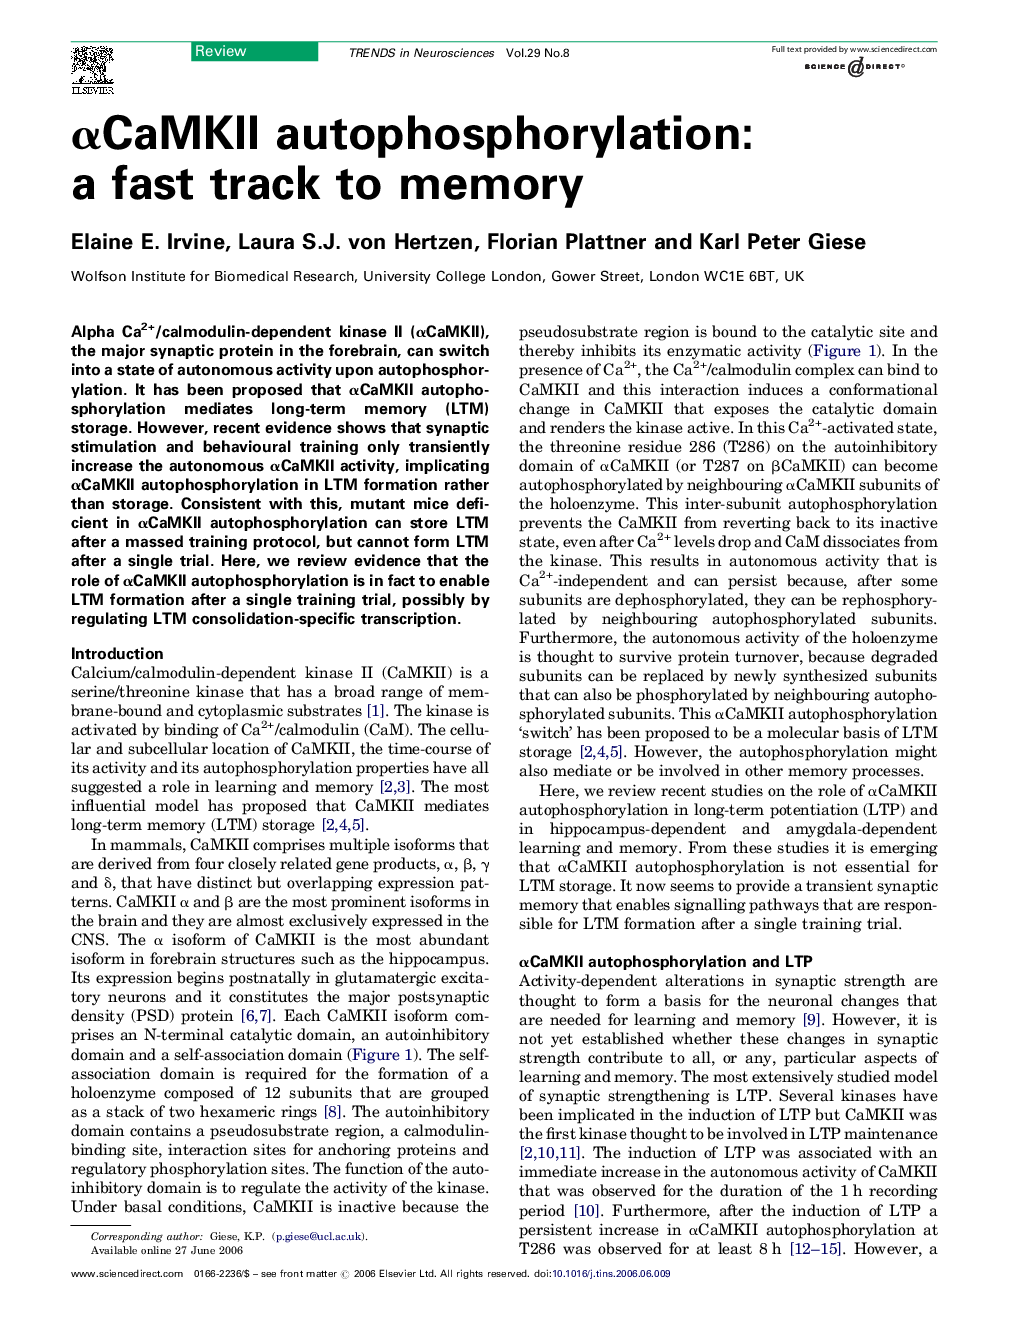 αCaMKII autophosphorylation: a fast track to memory